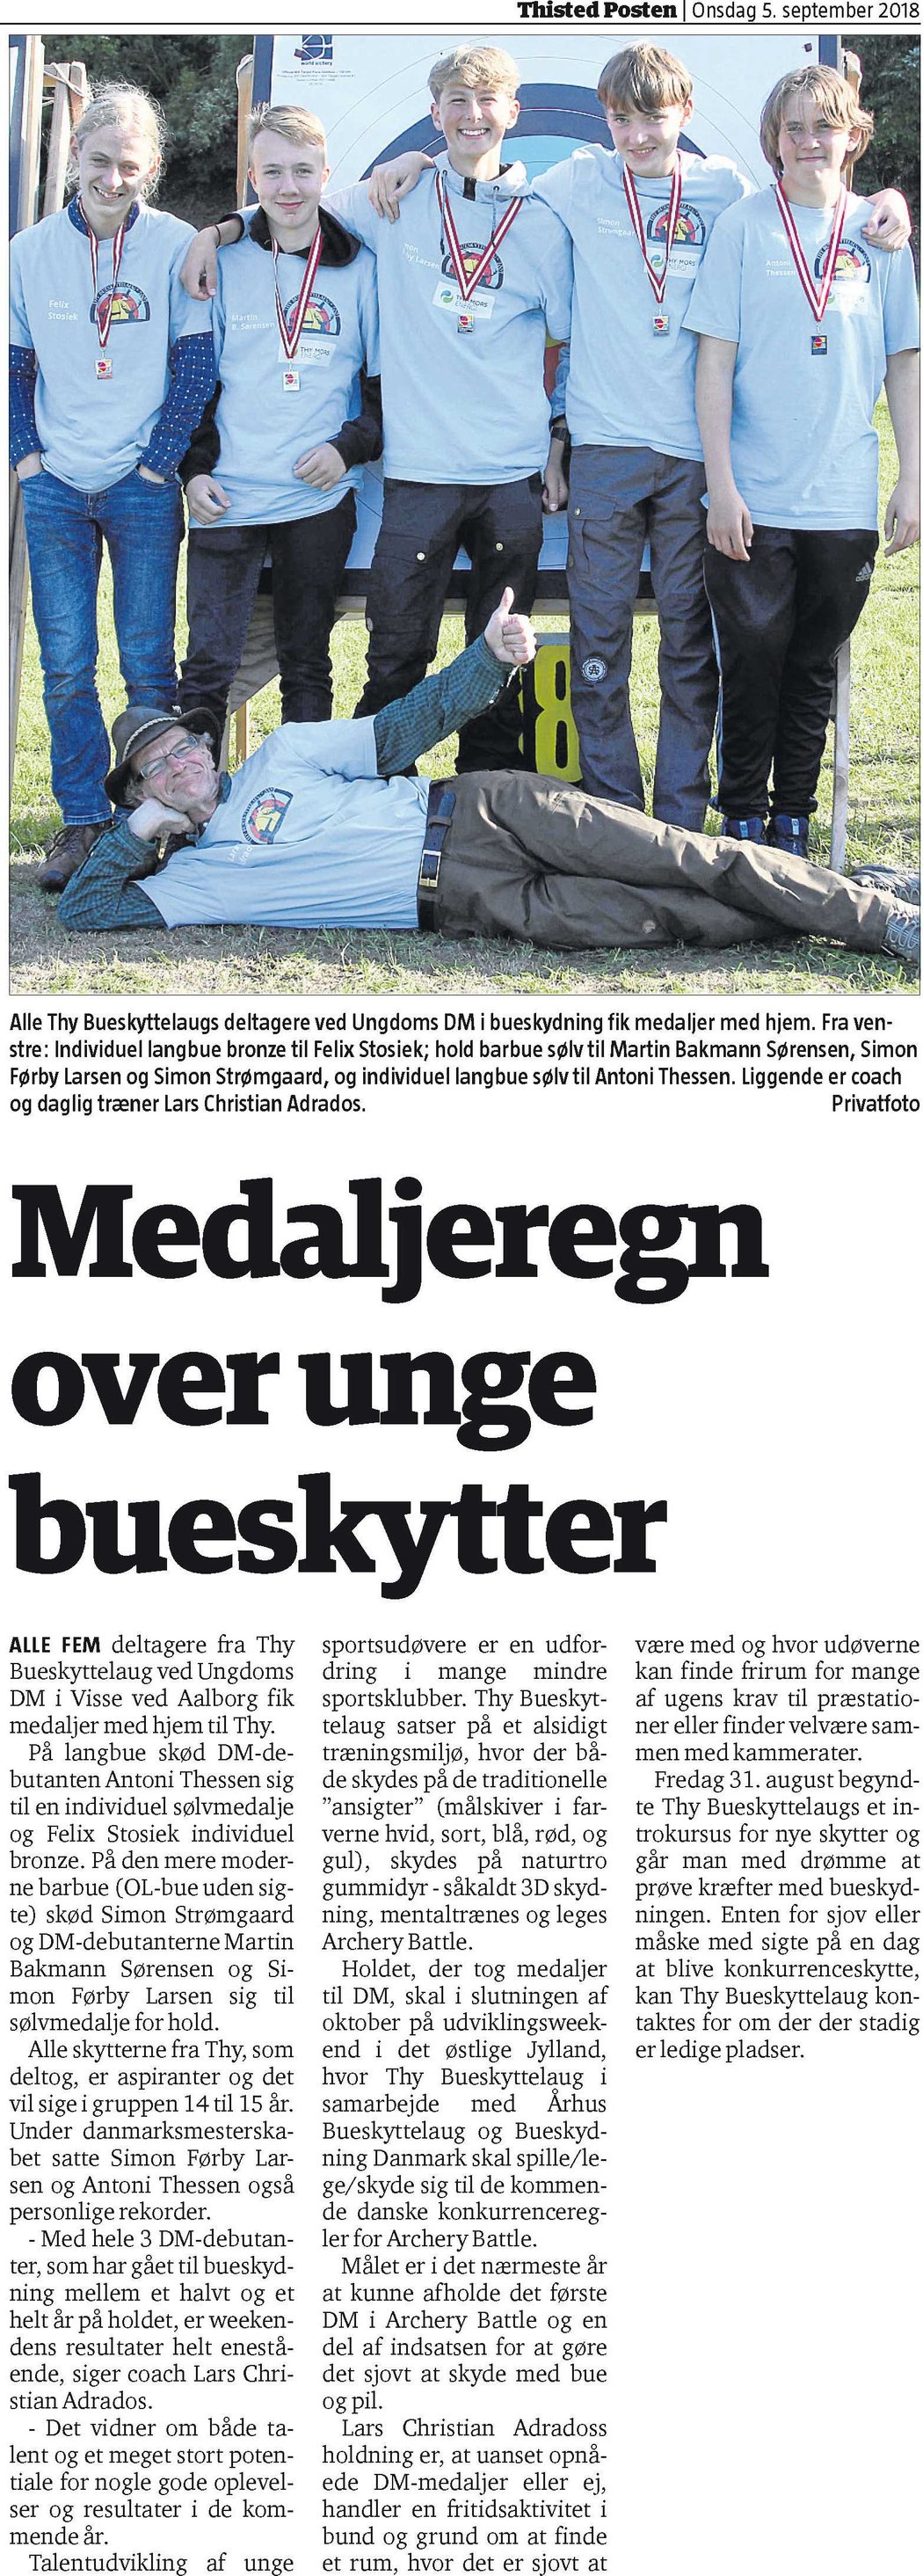 Medaljeregn over unge bueskytter fra Thy Bueskyttelaug – Thisted Posten d. 5/9-2018